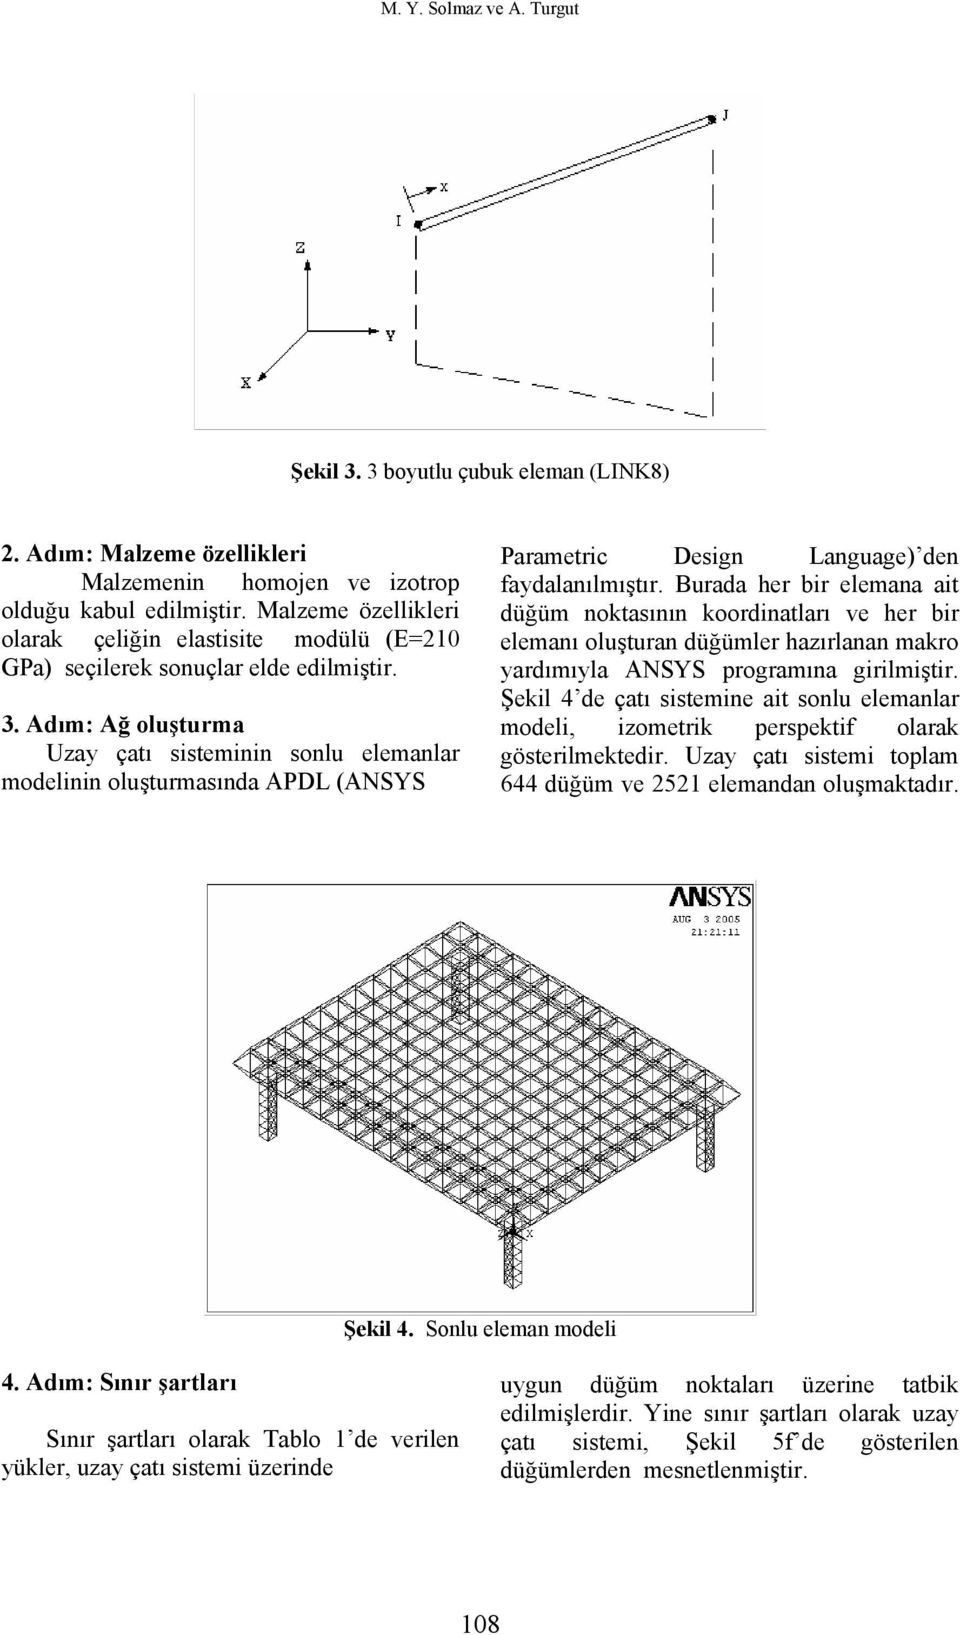 Adım: Ağ oluşturma Uzay çatı sisteminin sonlu elemanlar modelinin oluşturmasında APDL (ANSYS Parametric Design Language) den faydalanılmıştır.